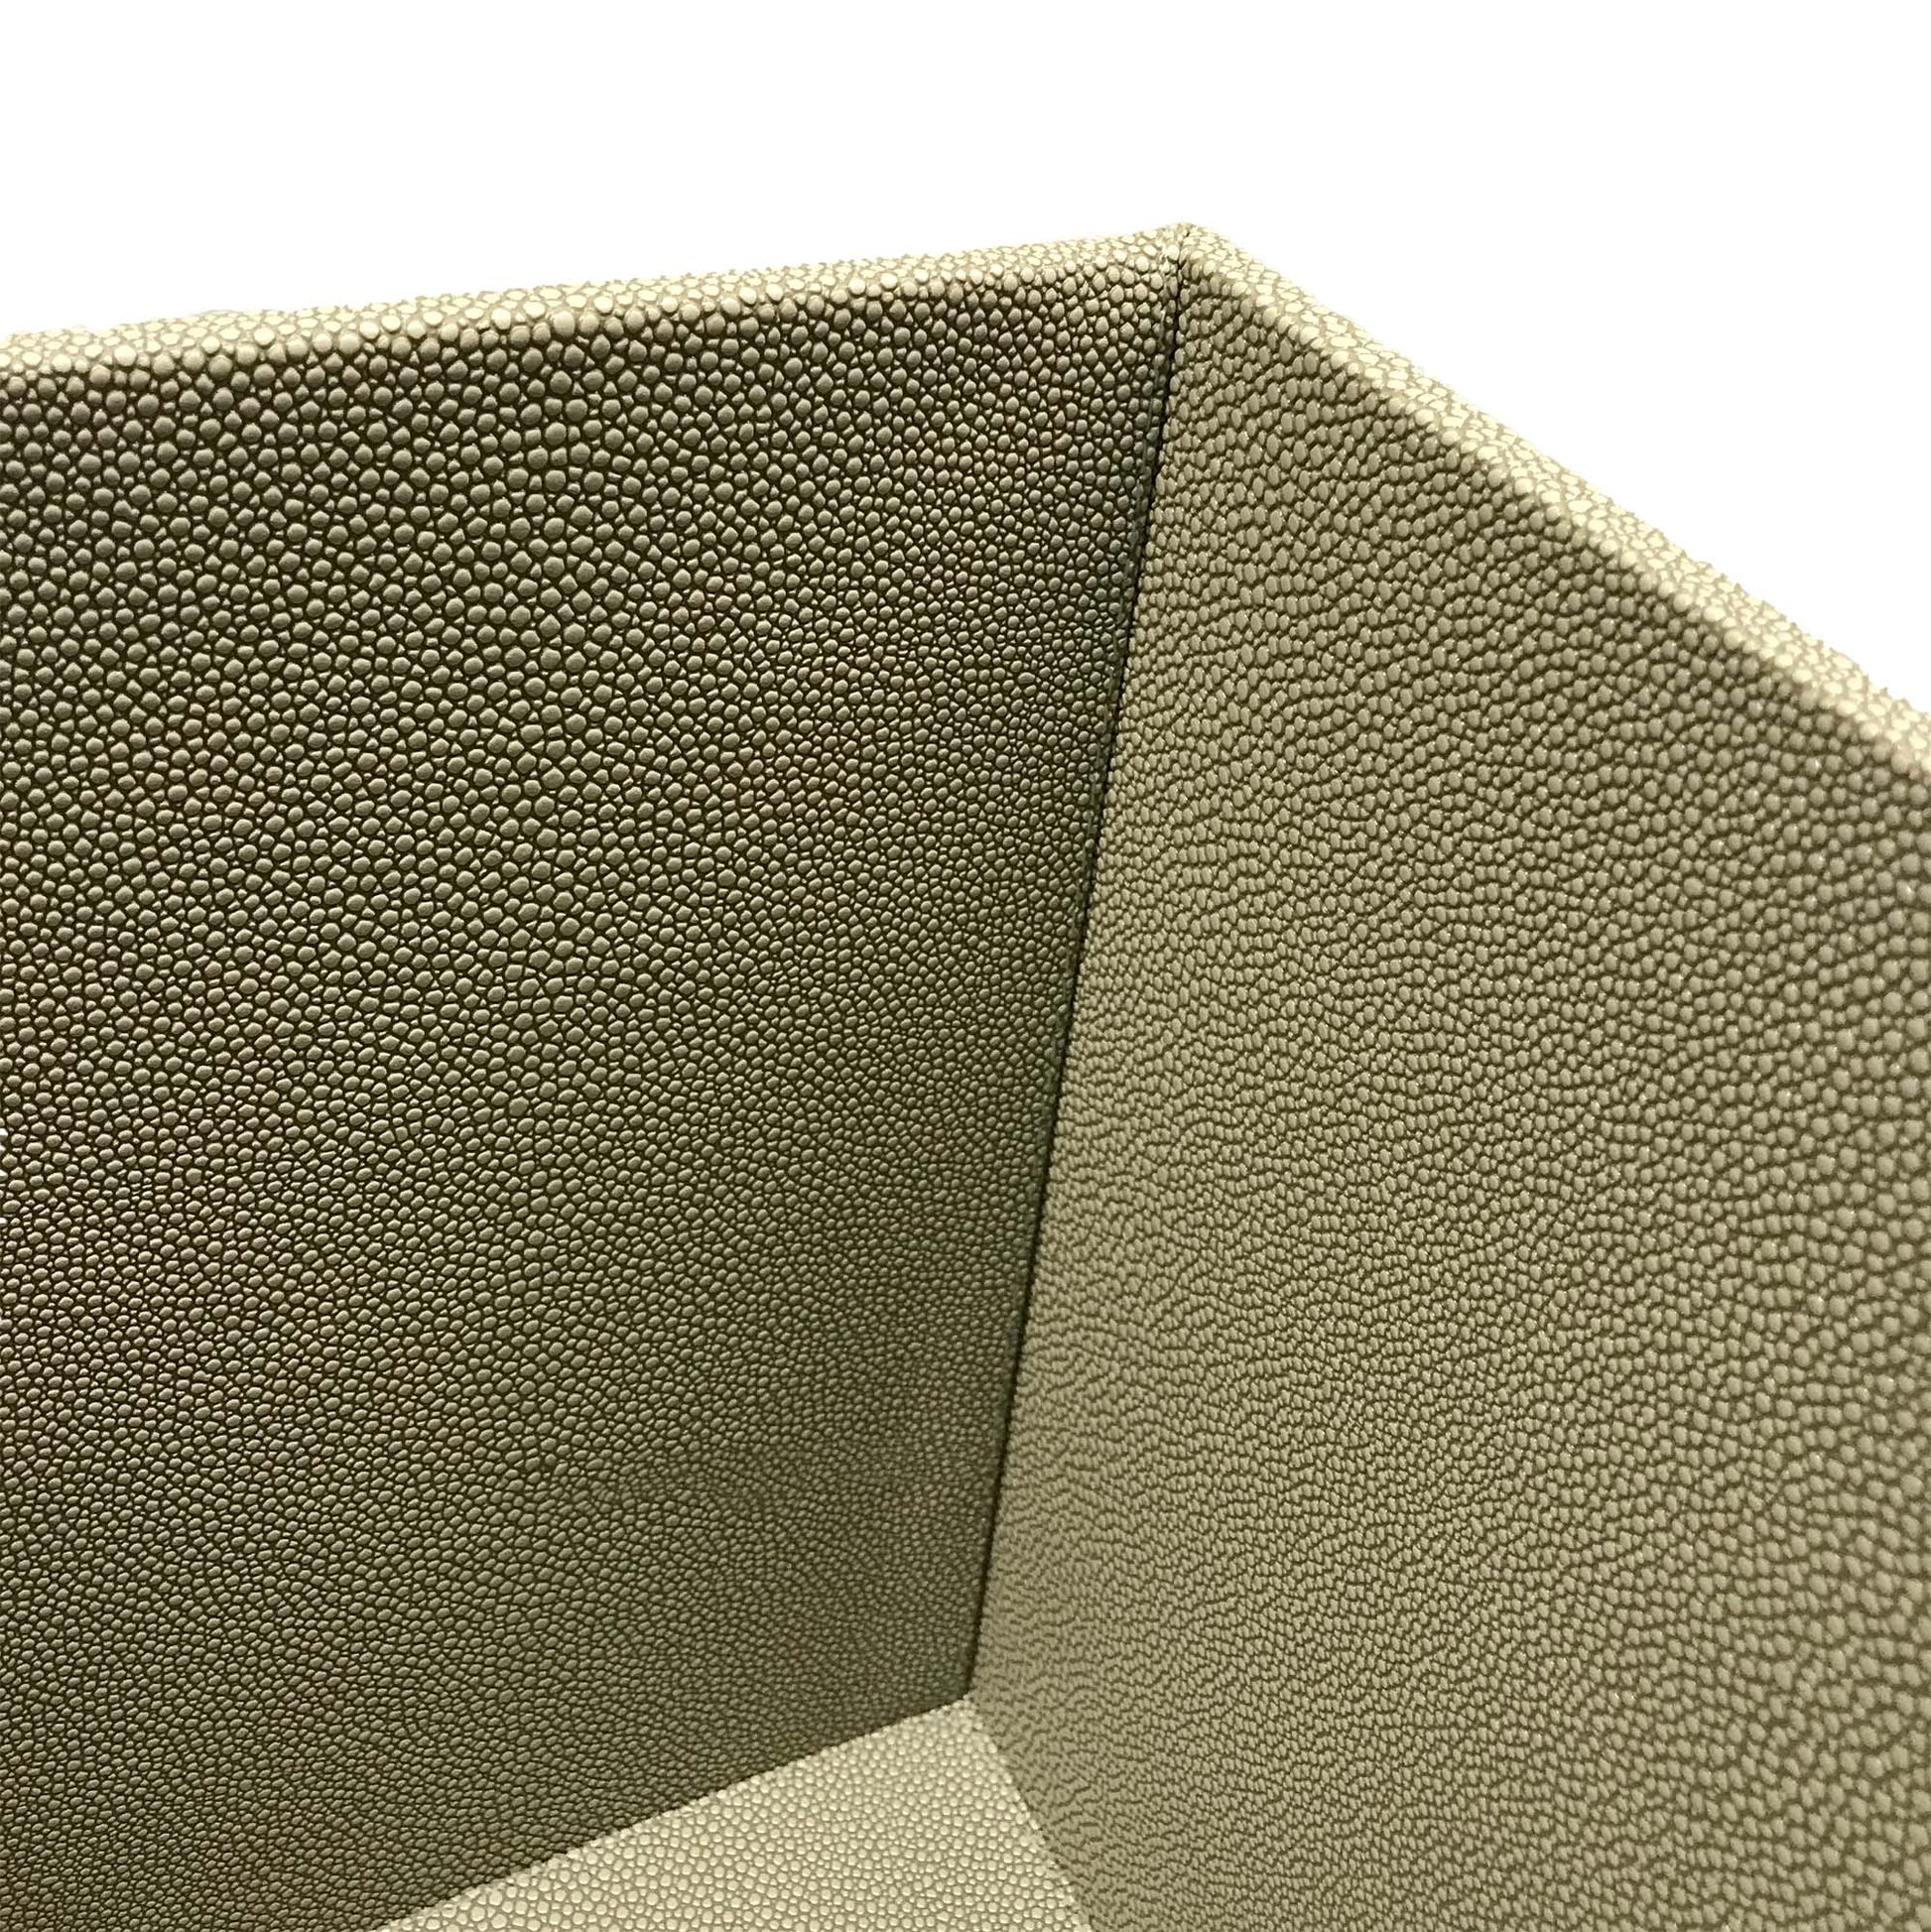 quadratischer Papierkorb mit abwischbarer Oberfläche aus grünem Kunstleder